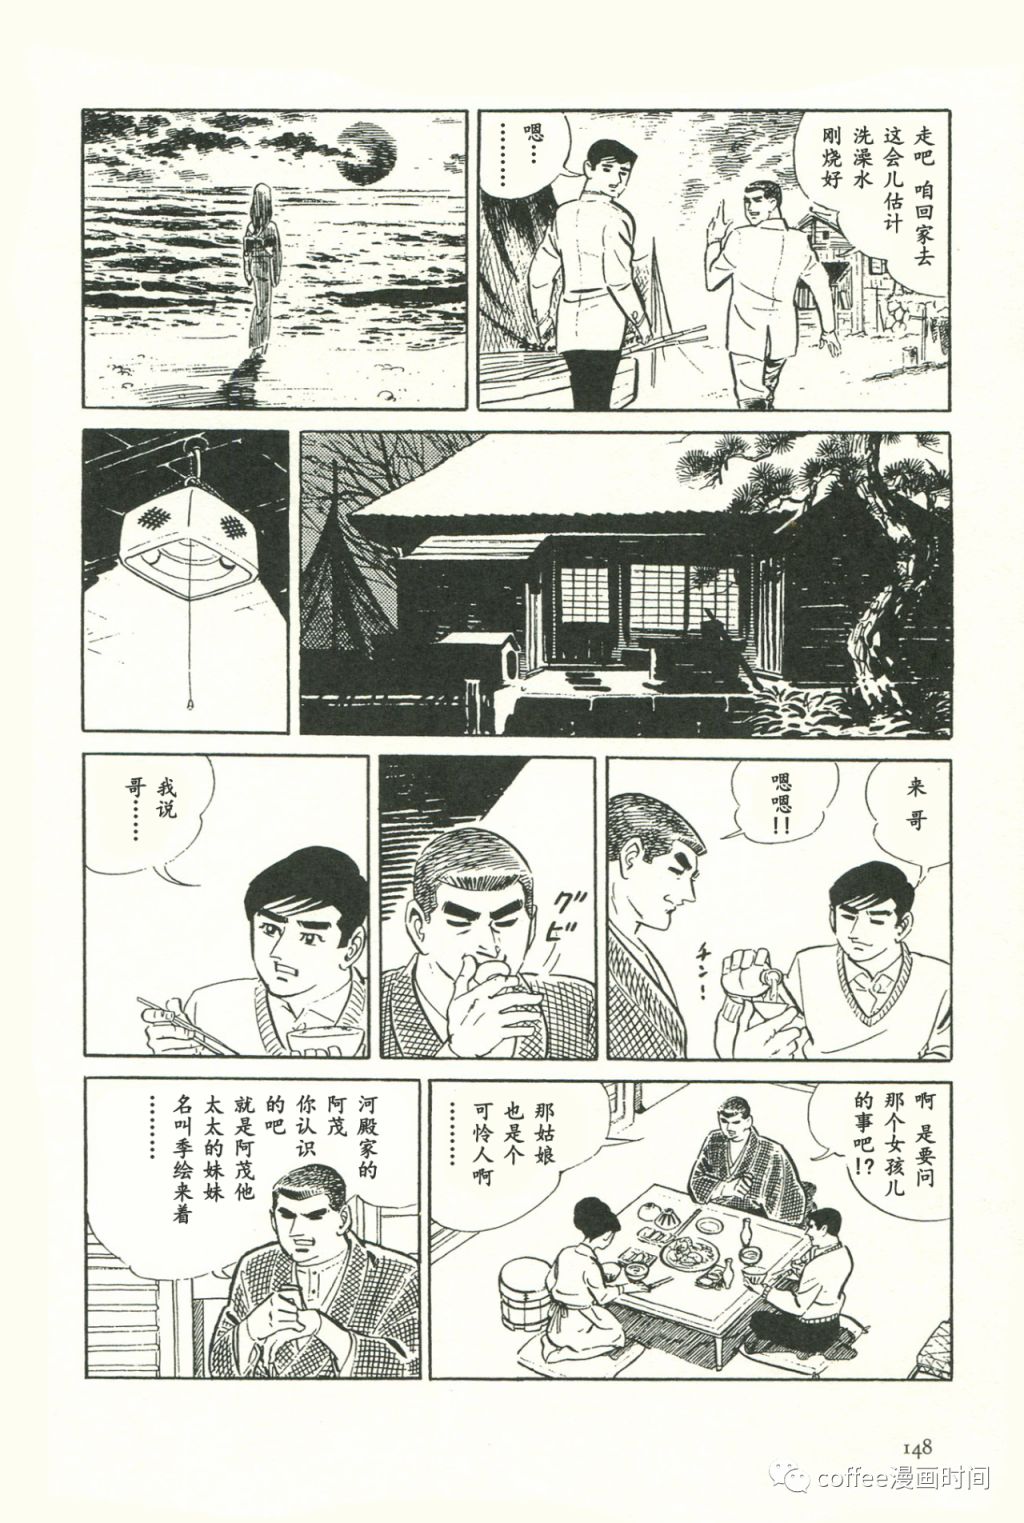 日本短篇漫畫傑作集 - 齋藤隆夫《純白的夕陽》 - 3